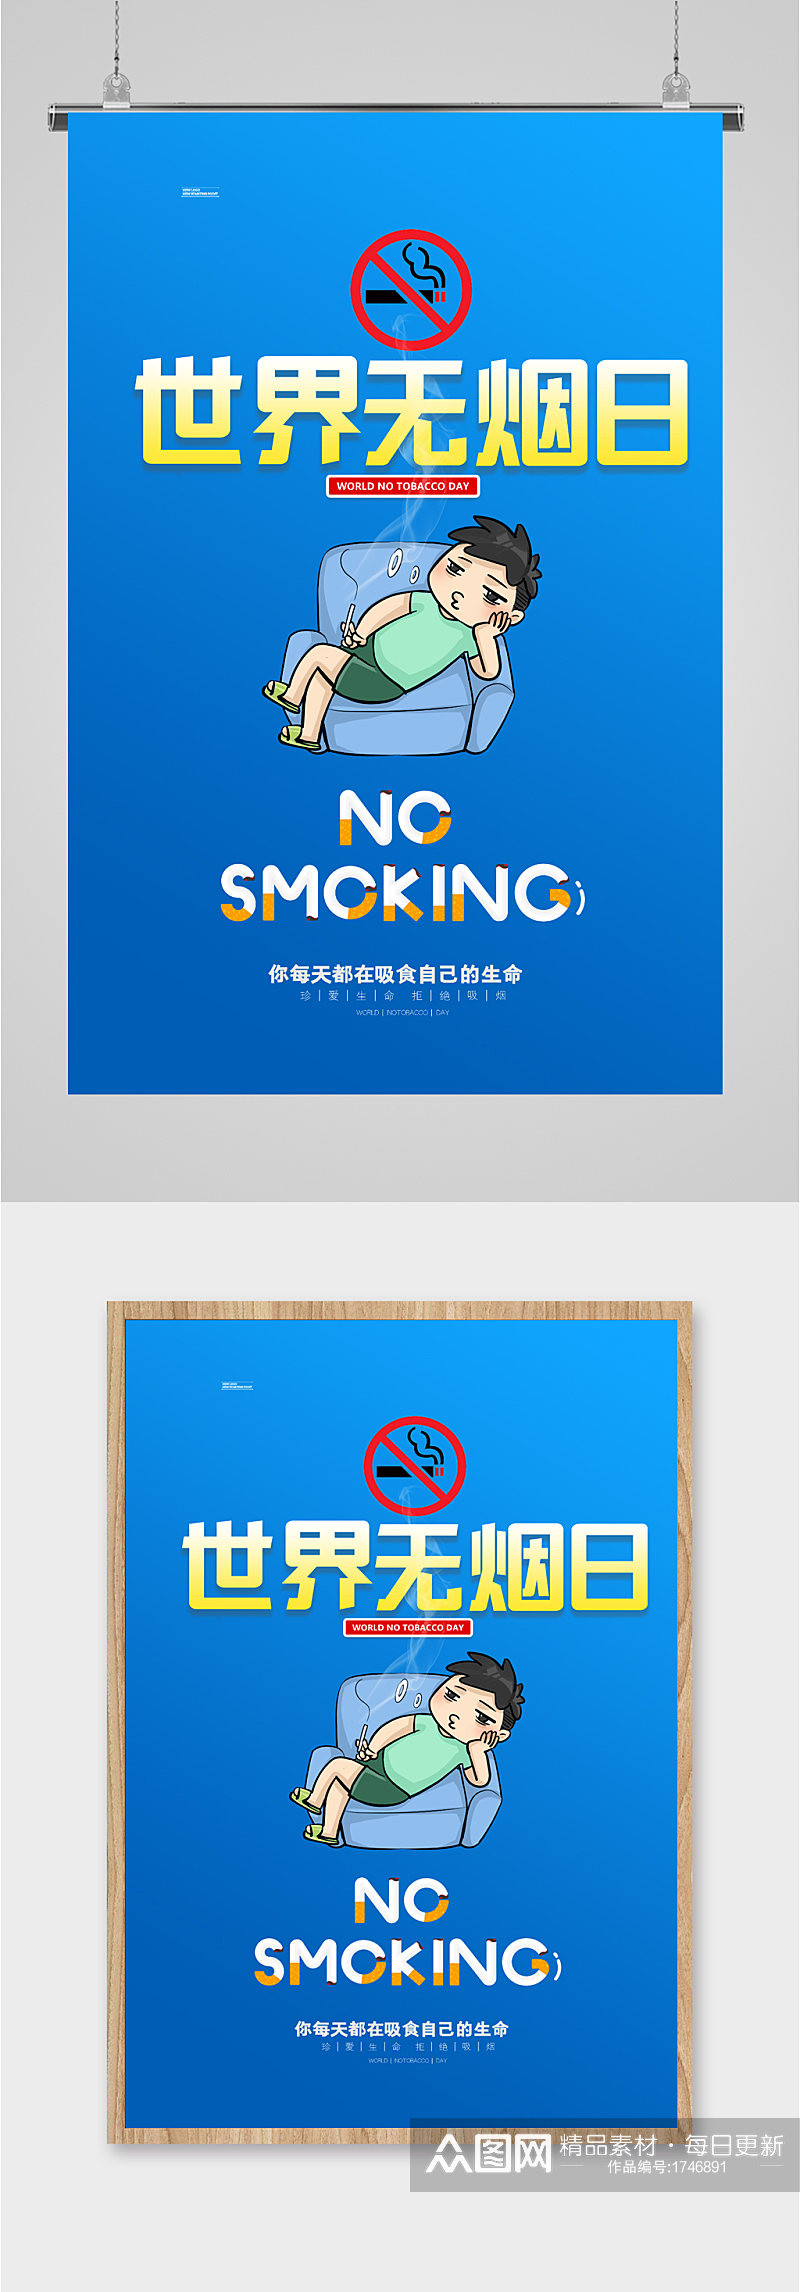 世界无烟日简约海报素材